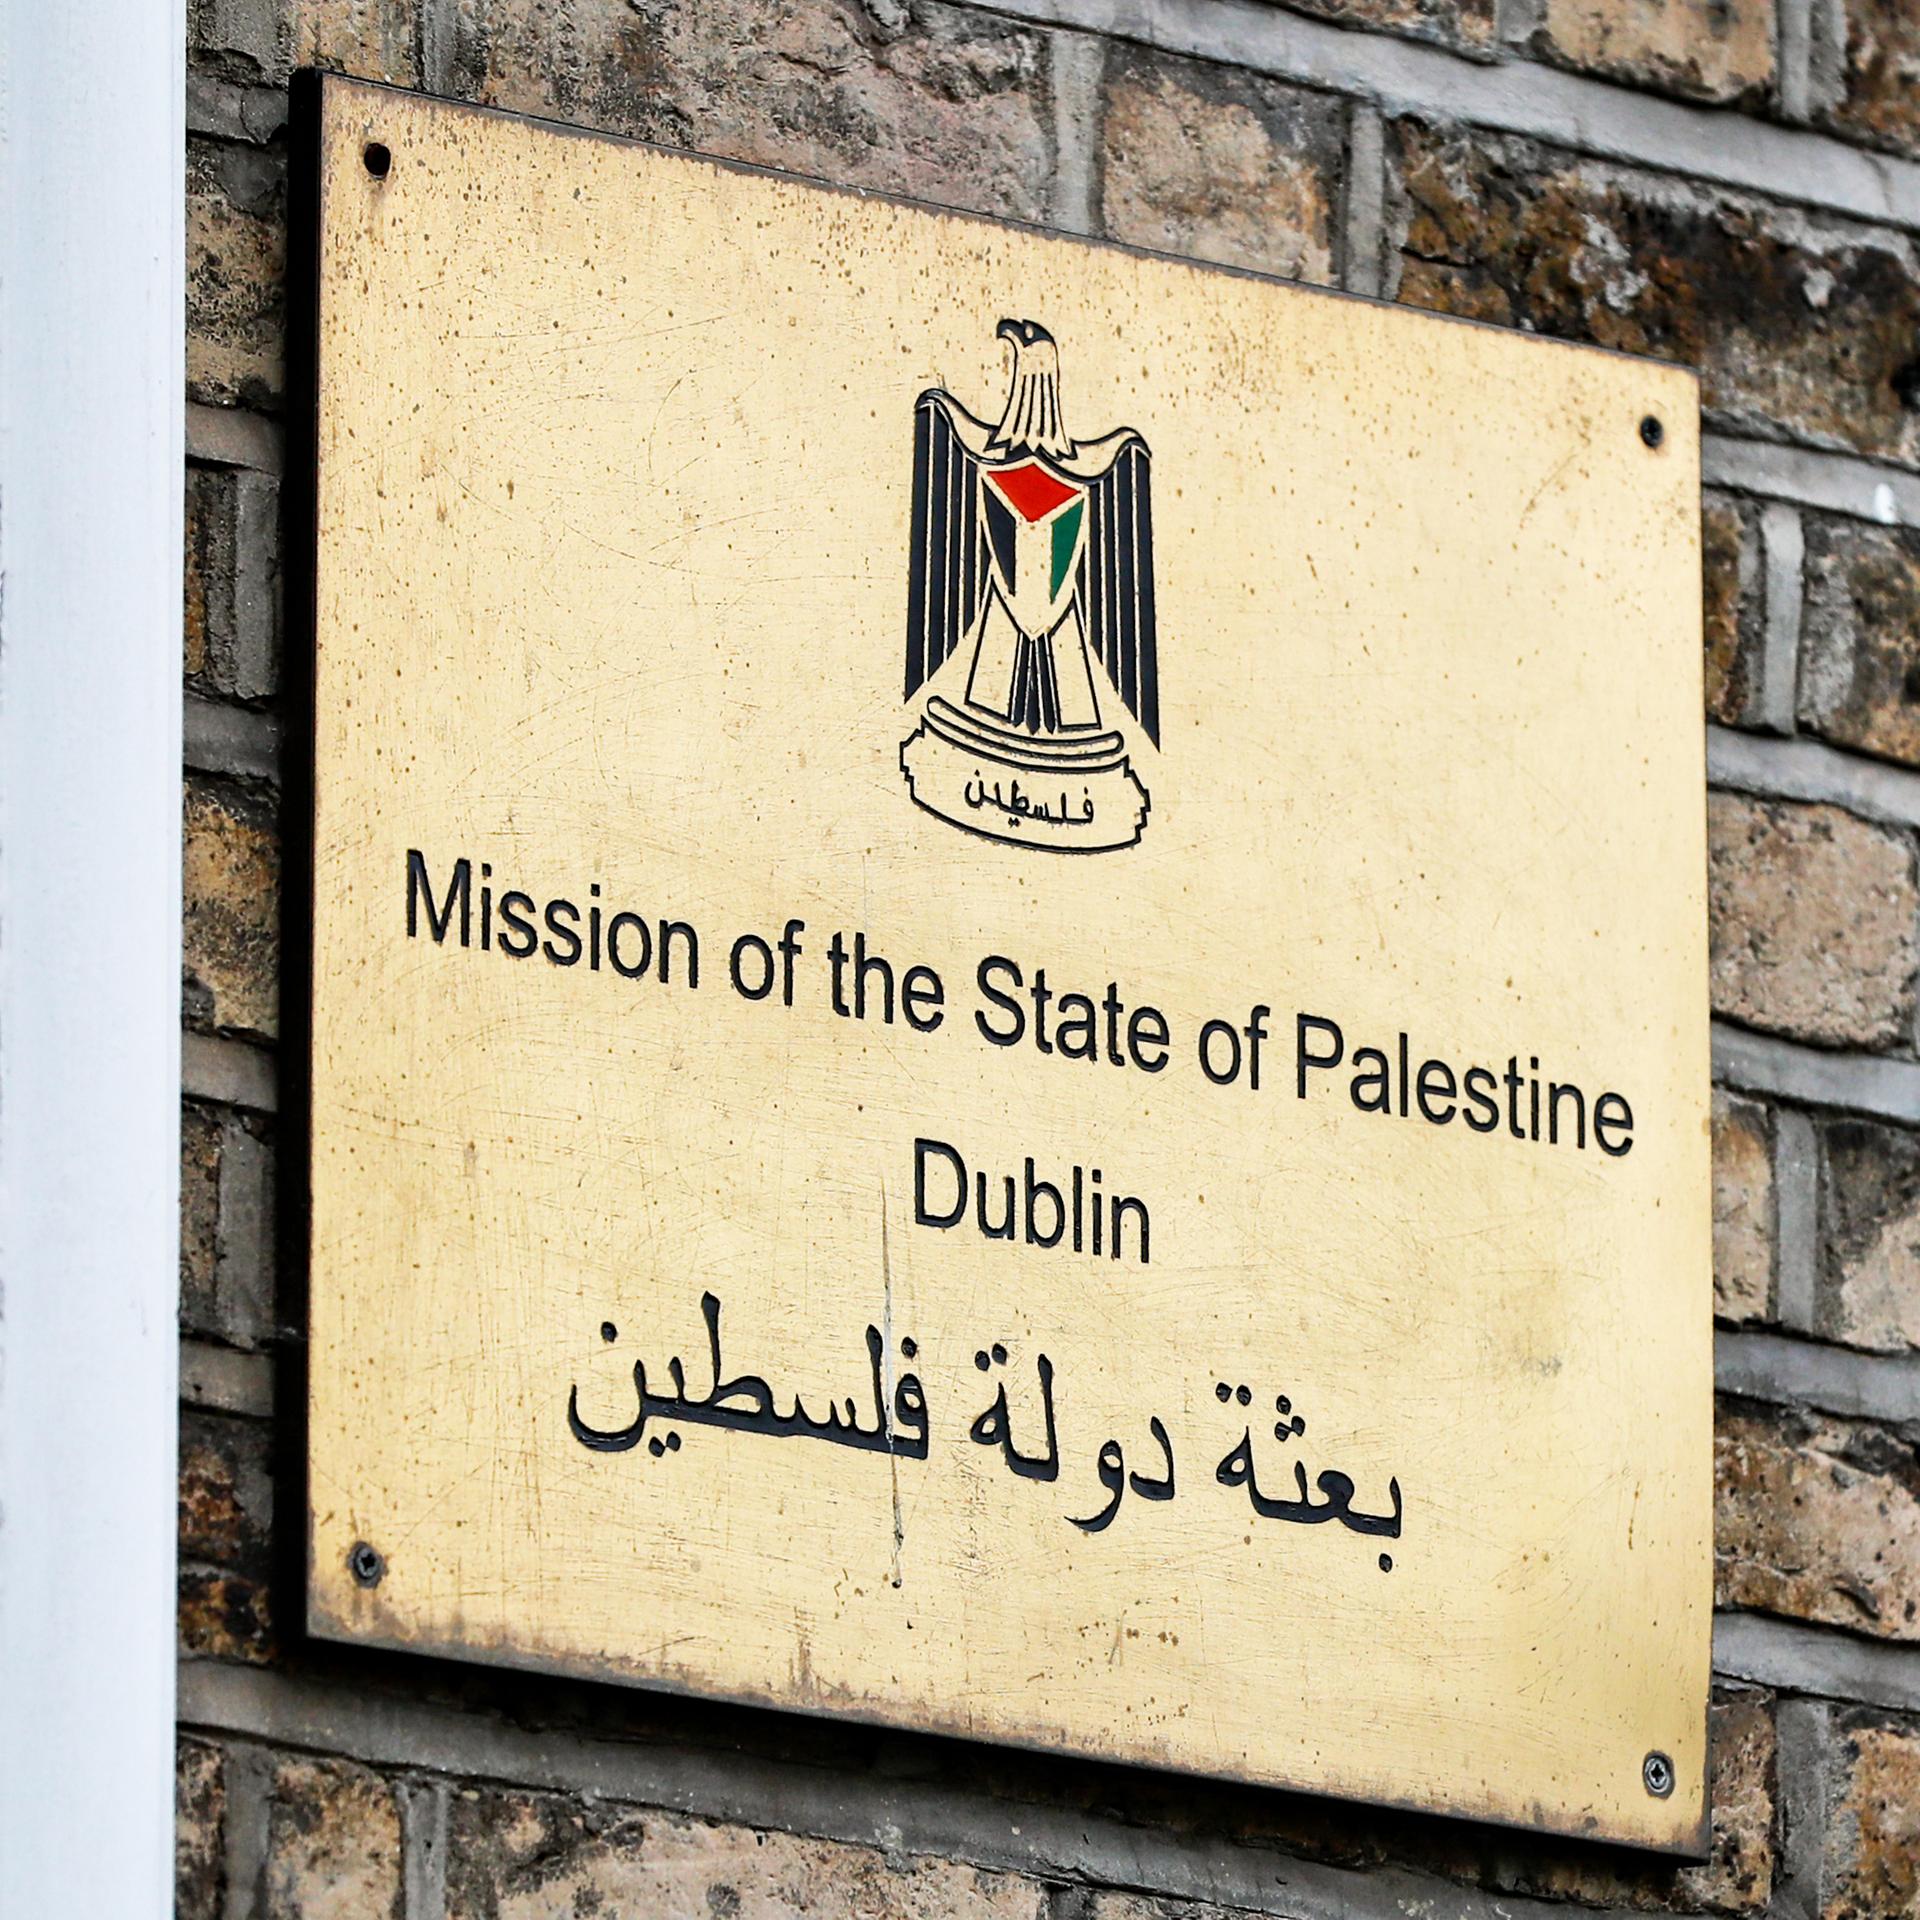 Anerkennung Palästinas - Vorschnell oder richtig für einen Frieden in Nahost?